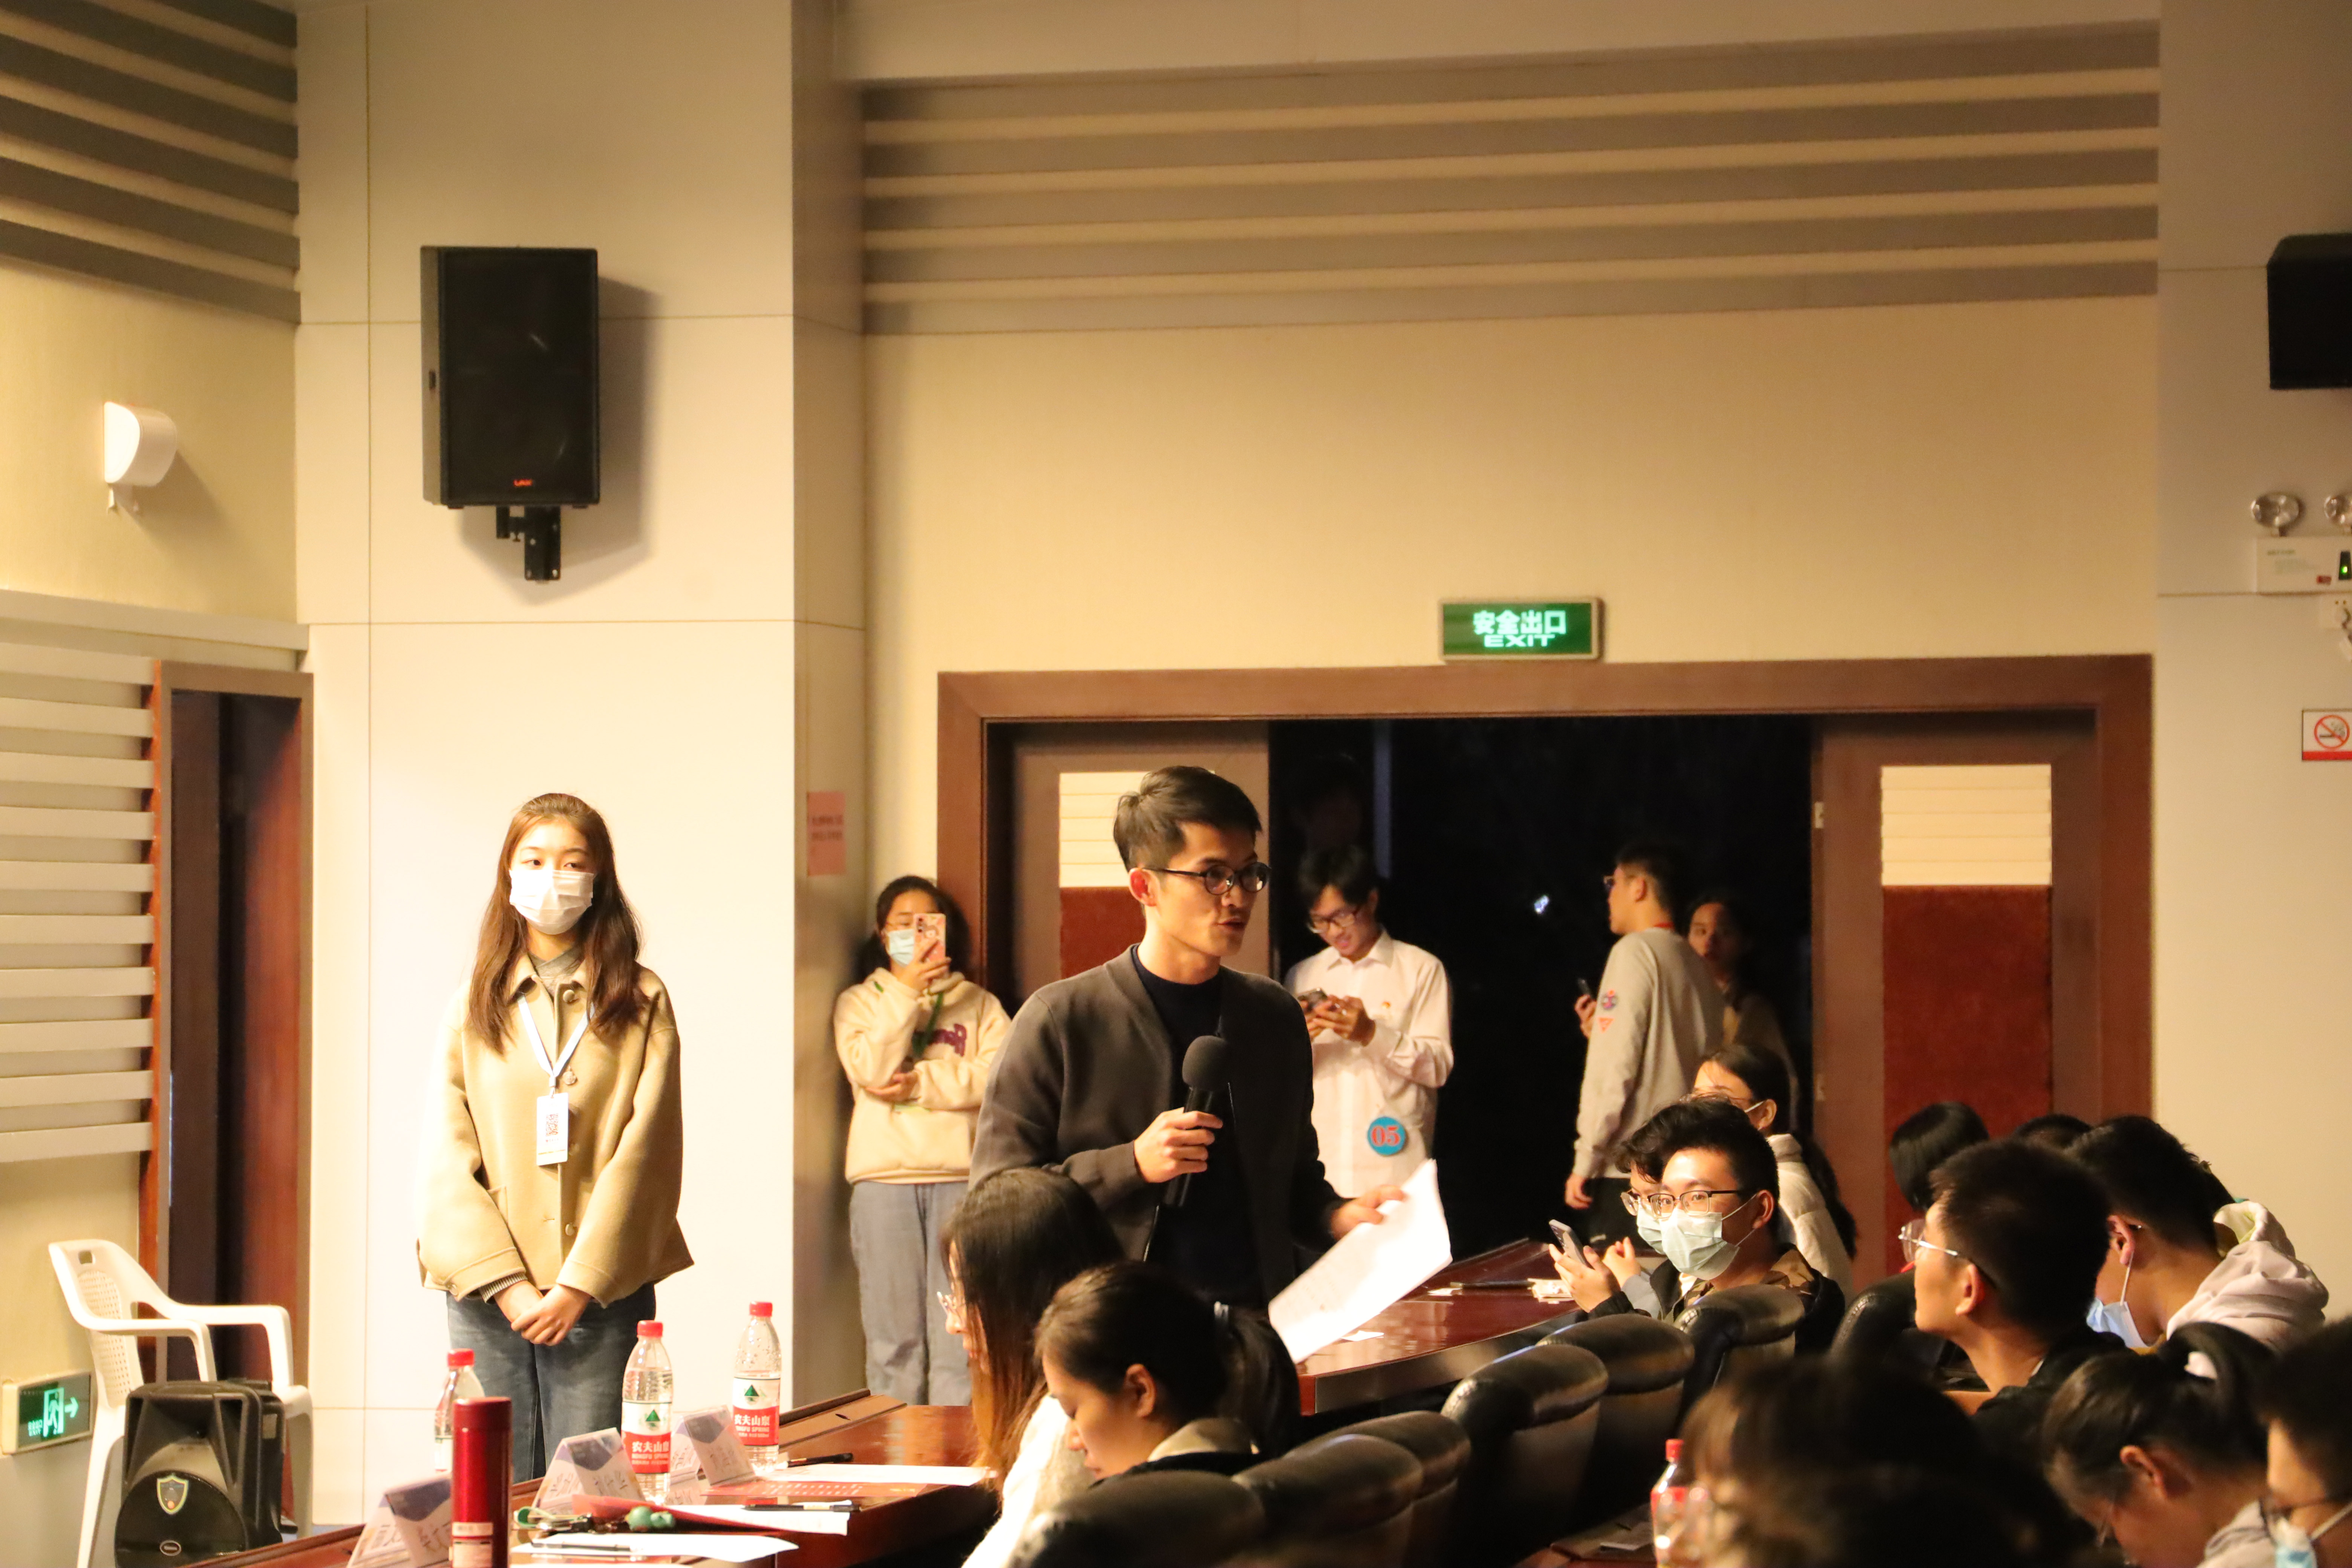 07学生工作处指导老师刘海滨点评此次红色经典朗诵活动。（李佩芝 摄）